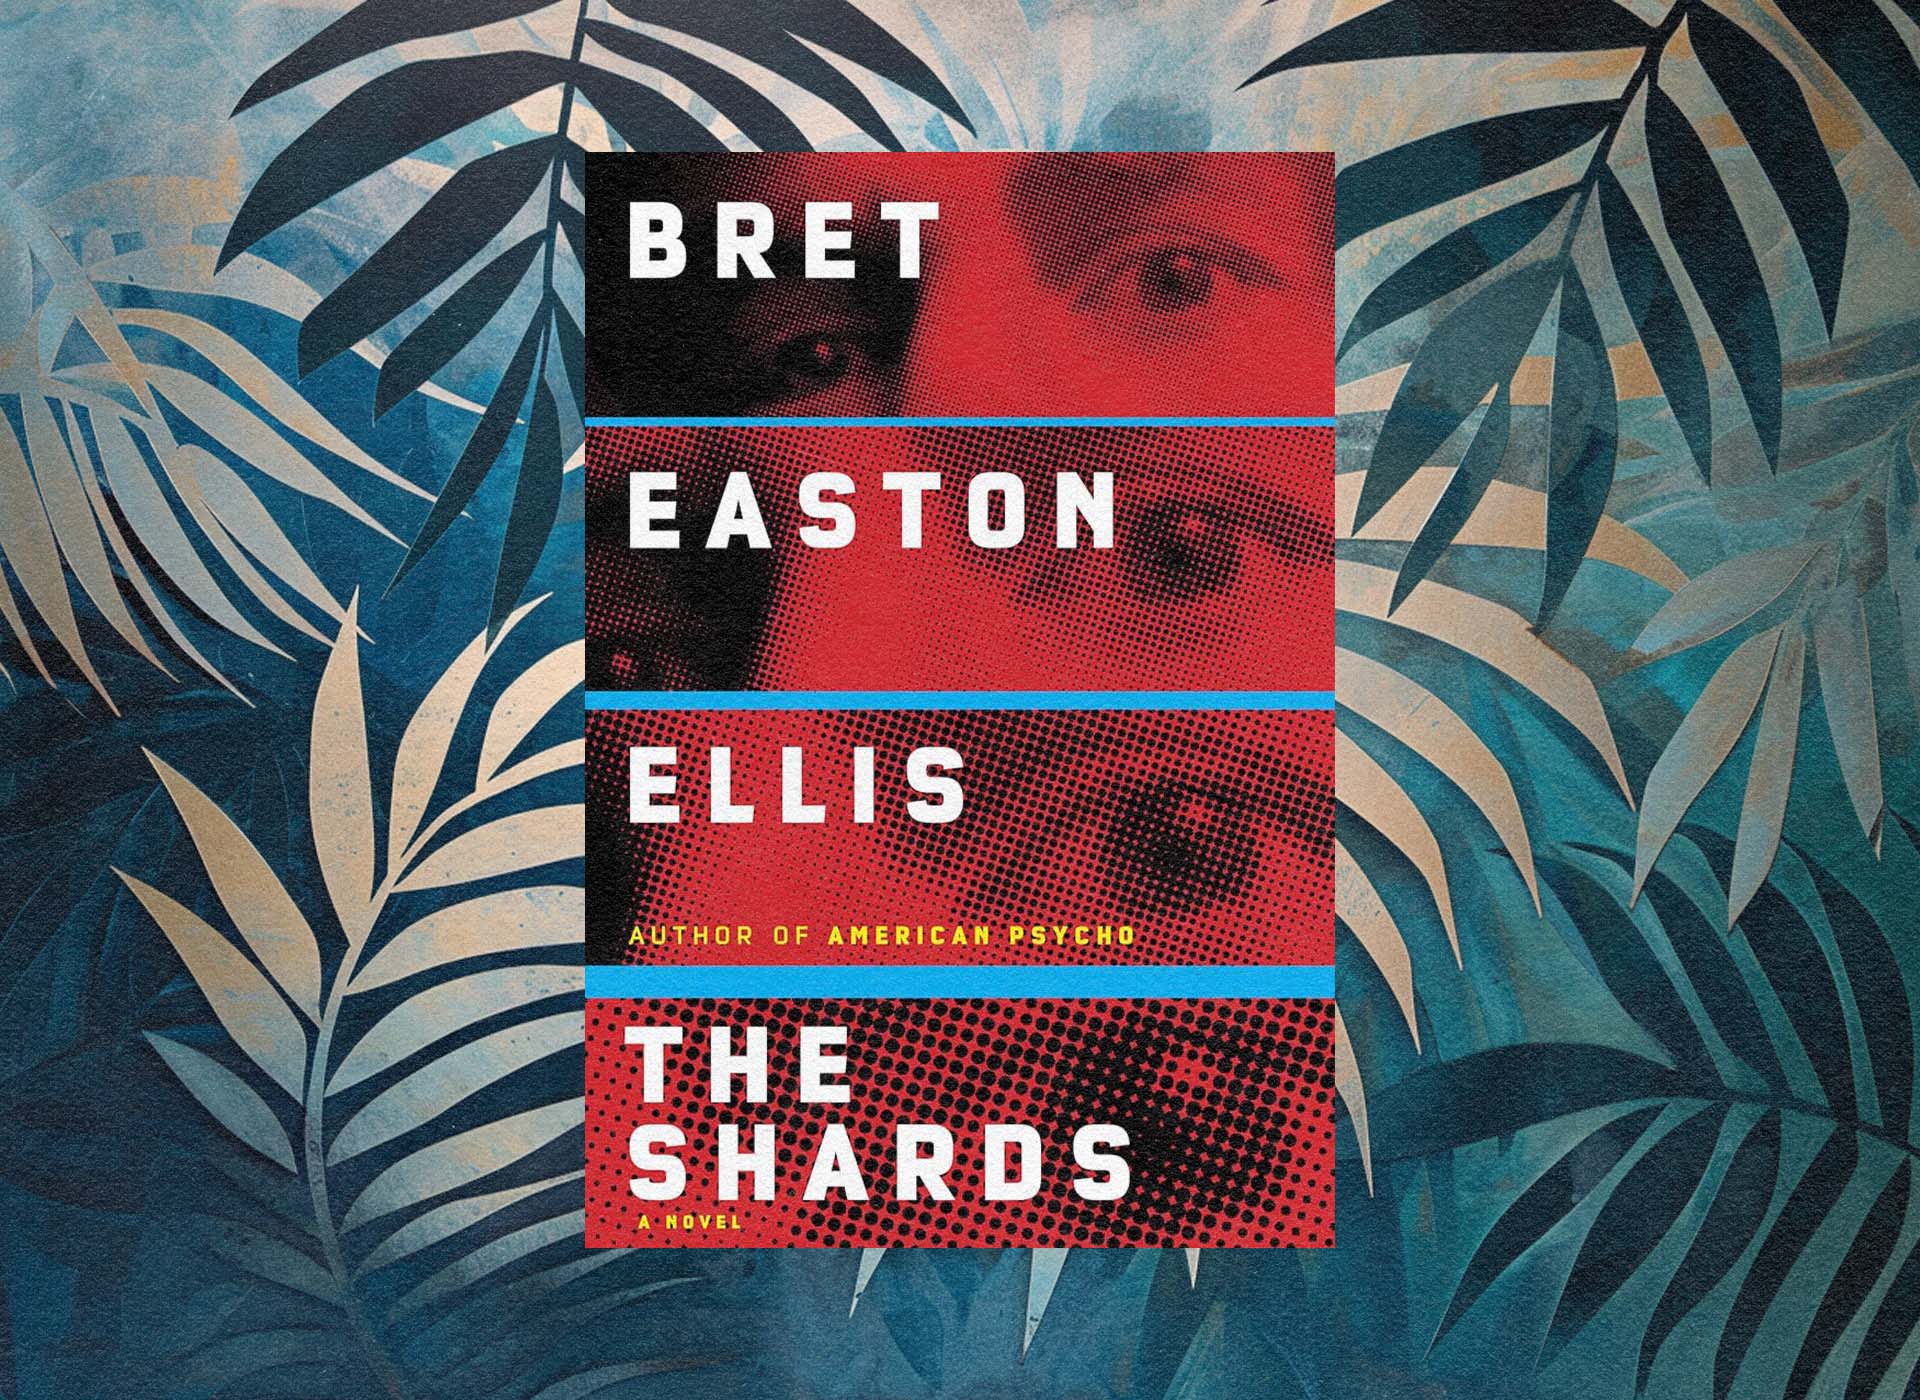 The Anti-Nostalgia of Bret Easton Ellis